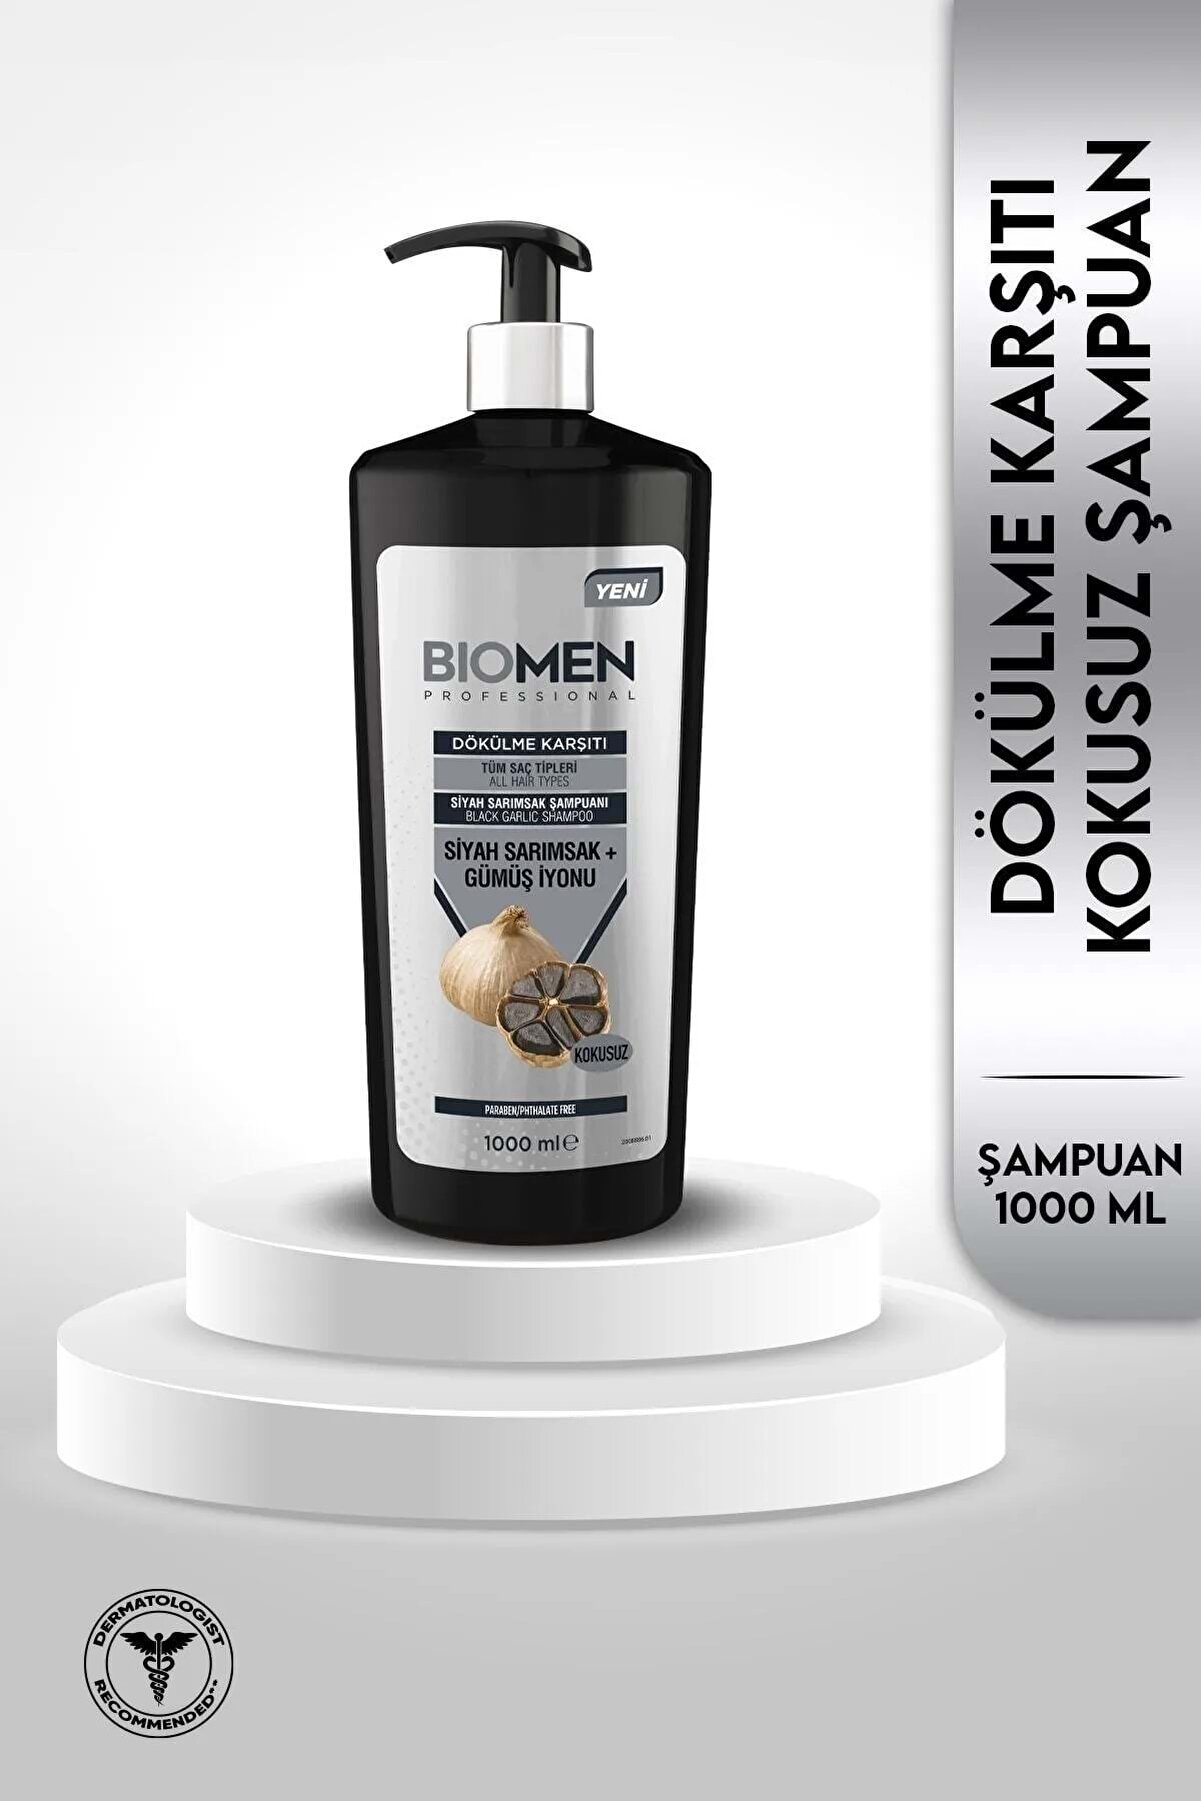 Biomen Professional Siyah Sarımsak & Gümüş Iyonu Dökülme Karşıtı Şampuan 1000ml